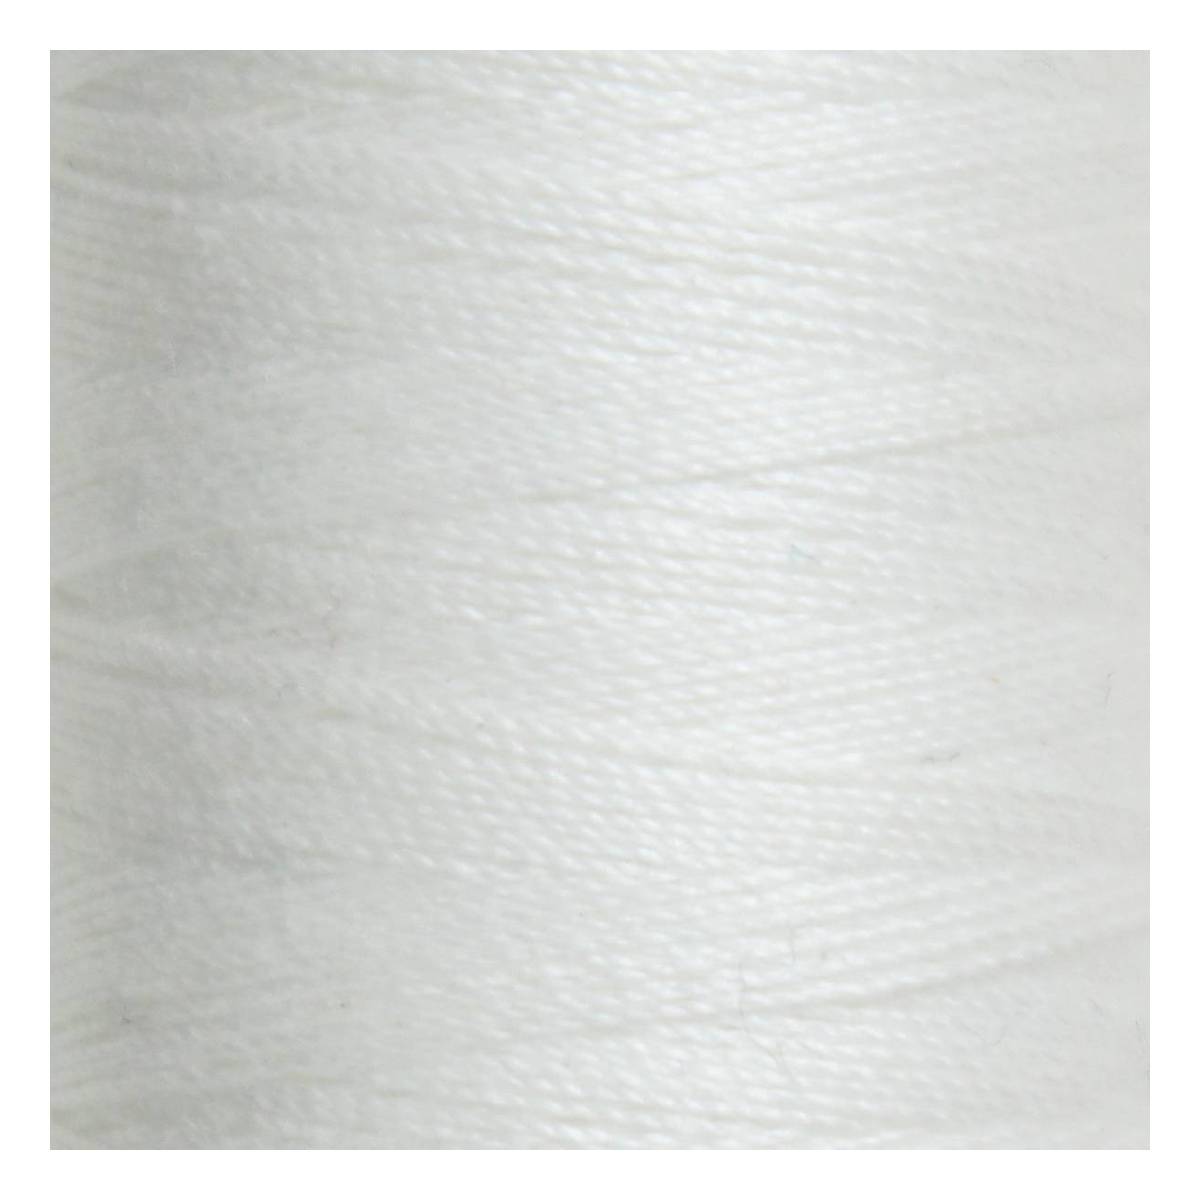 Gutermann White Sulky Cotton Thread 30 Weight 300m (1001)